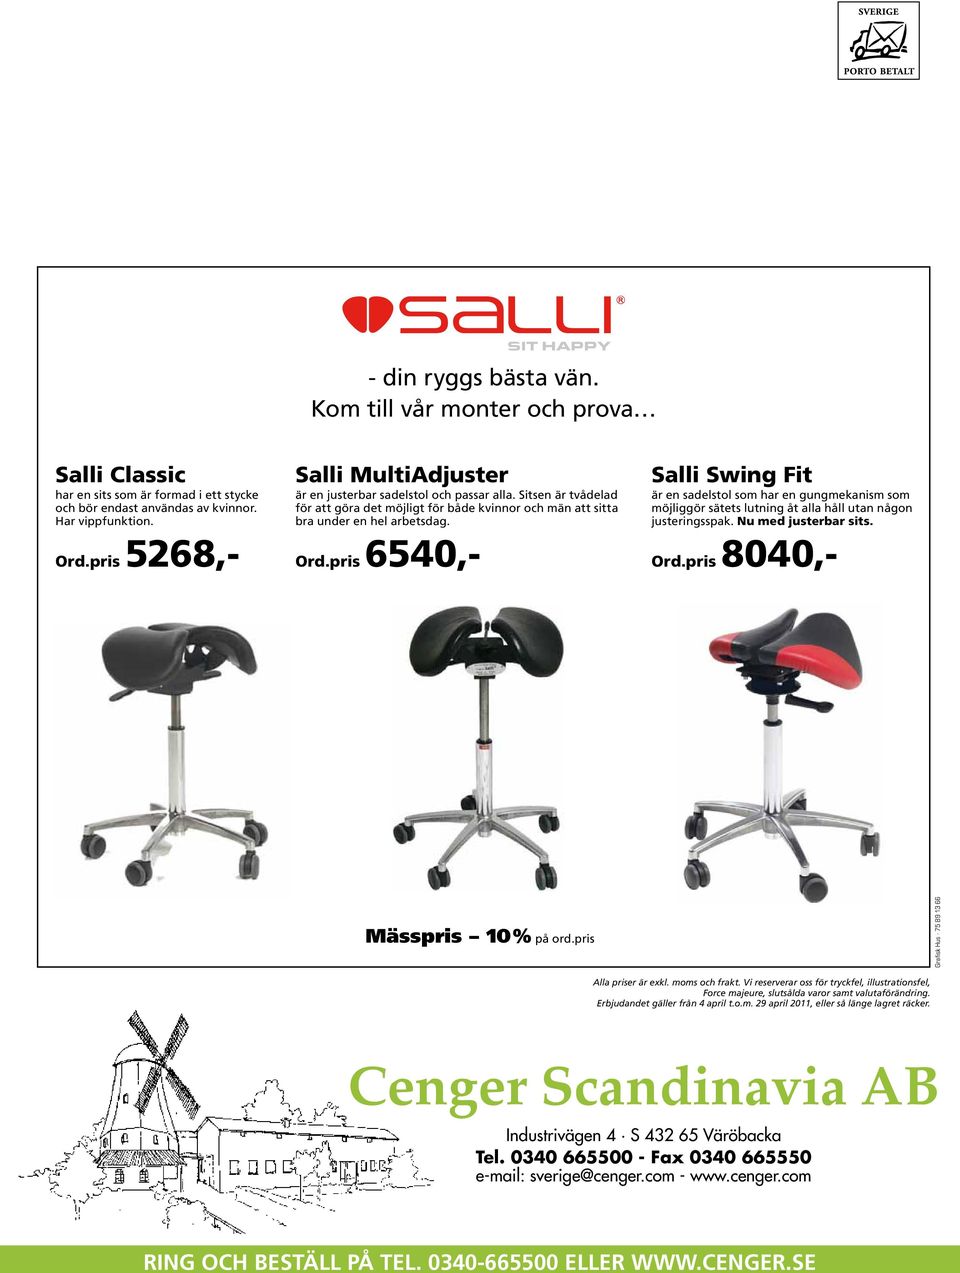 pris 6540,- Salli Swing Fit är en sadelstol som har en gungmekanism som möjliggör sätets lutning åt alla håll utan någon justeringsspak. Nu med justerbar sits. Ord.pris 8040,- Mässpris 10% på ord.